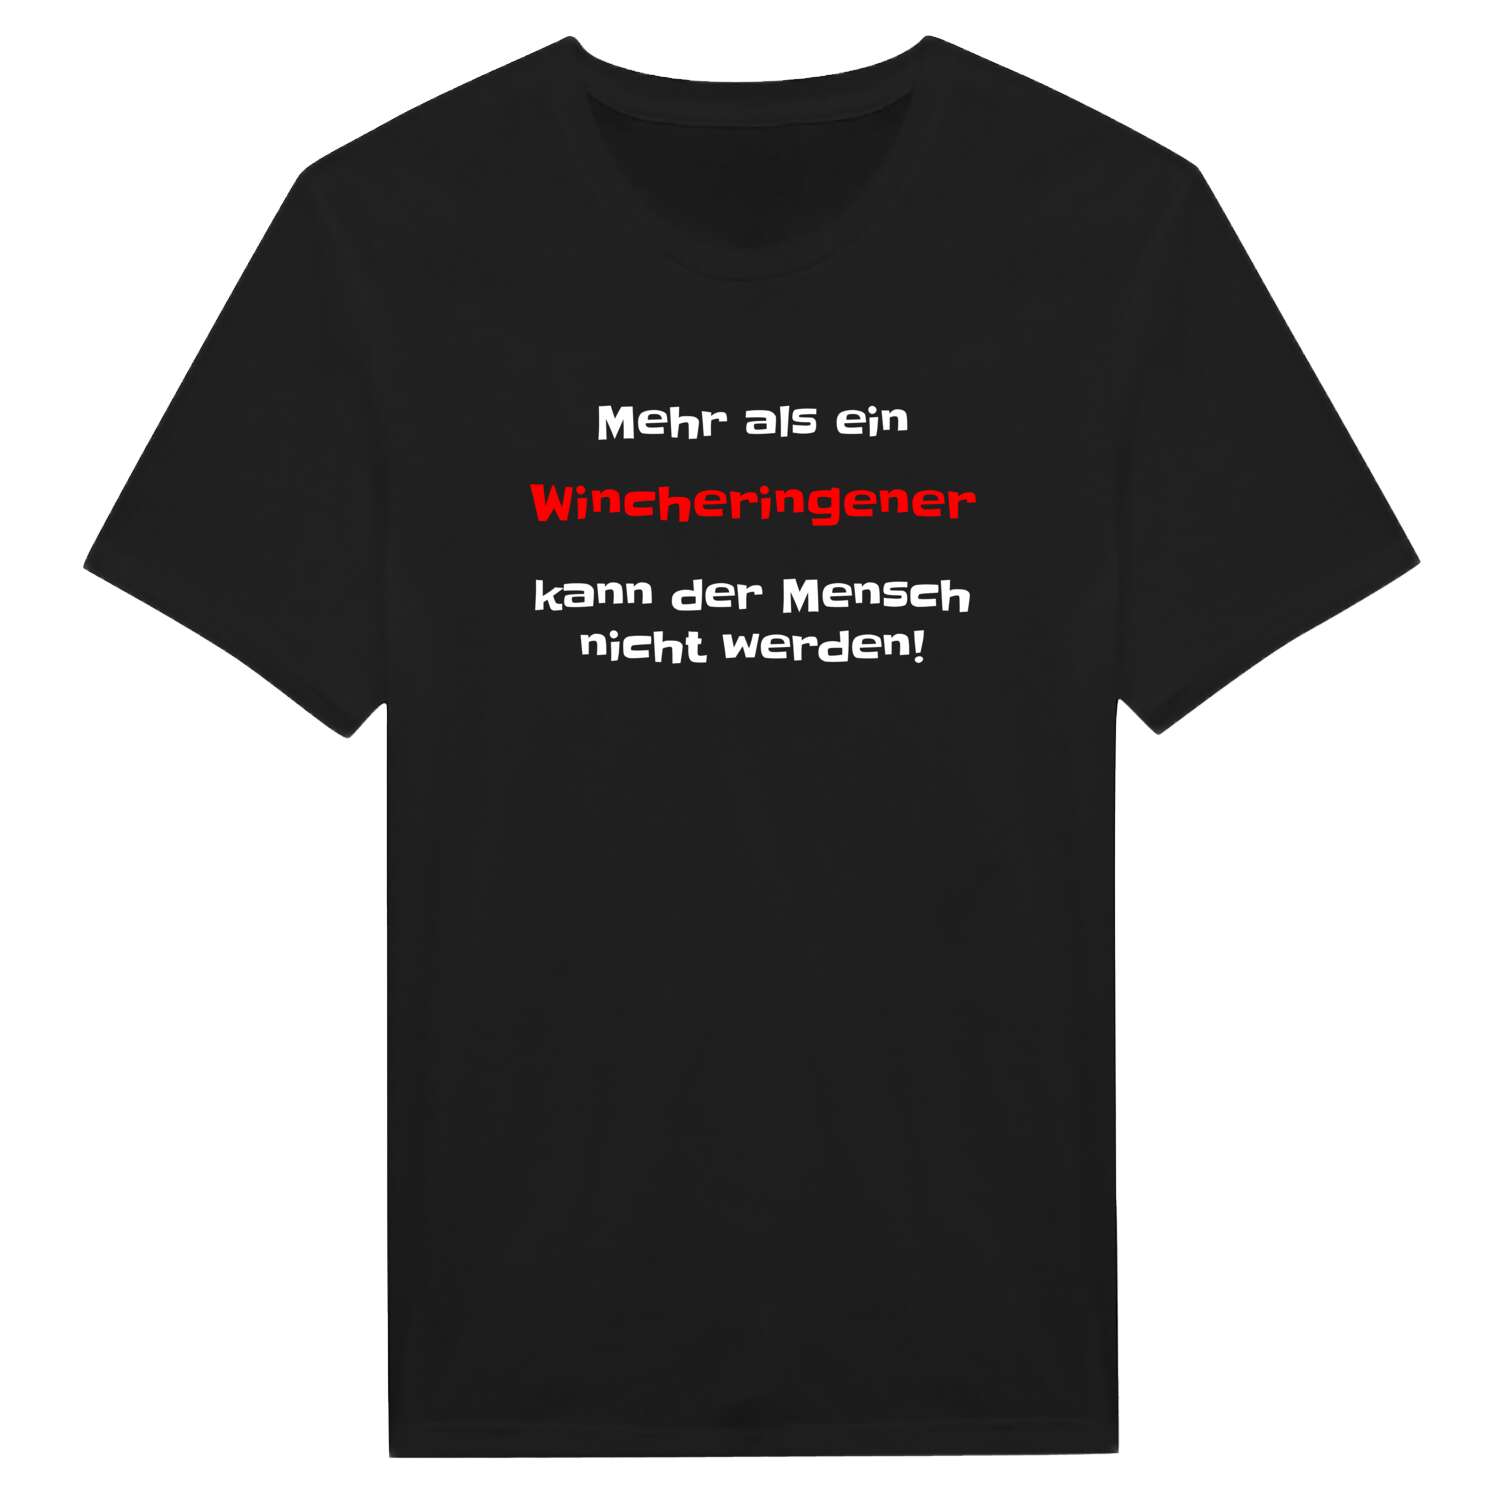 Wincheringen T-Shirt »Mehr als ein«